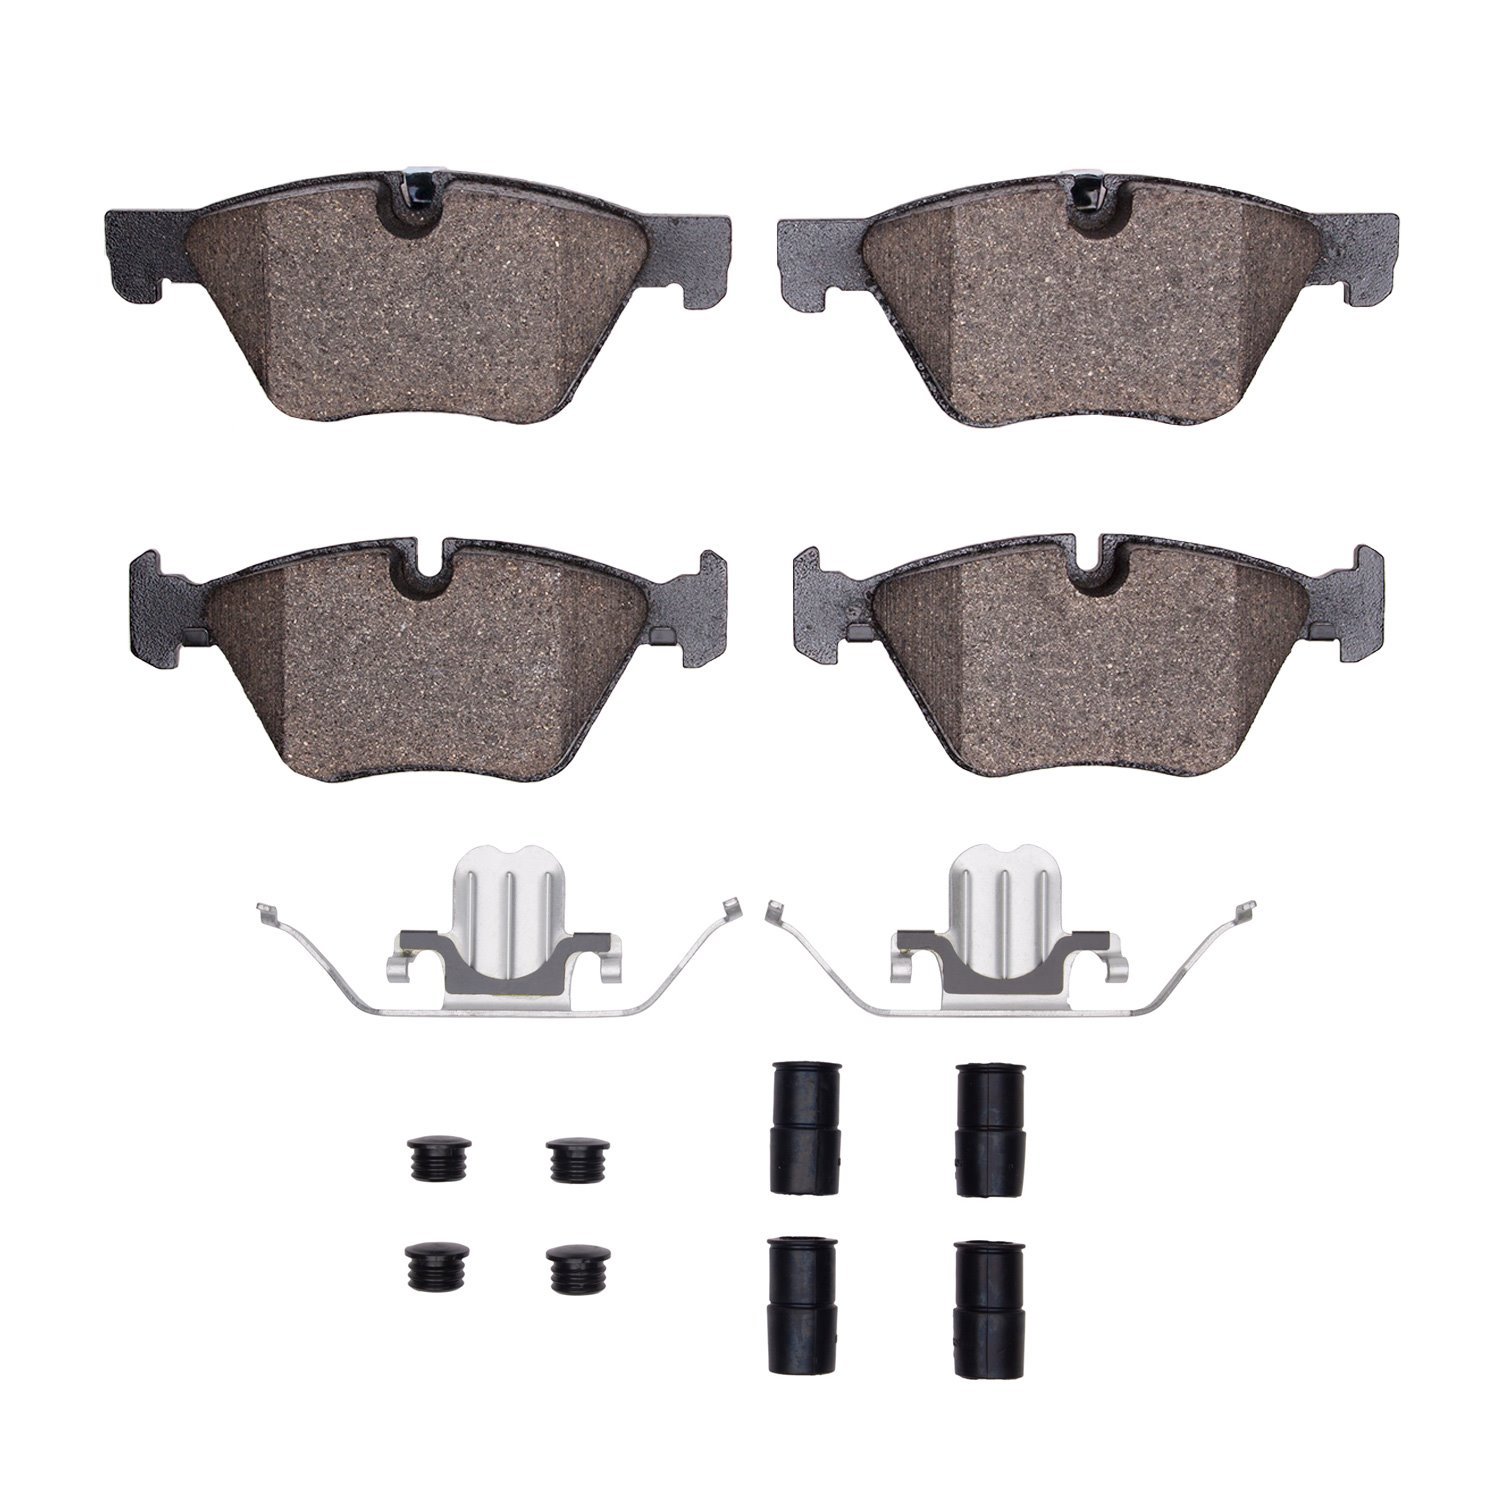 1310-1504-01 3000-Series Ceramic Brake Pads & Hardware Kit, 2011-2016 BMW, Position: Front